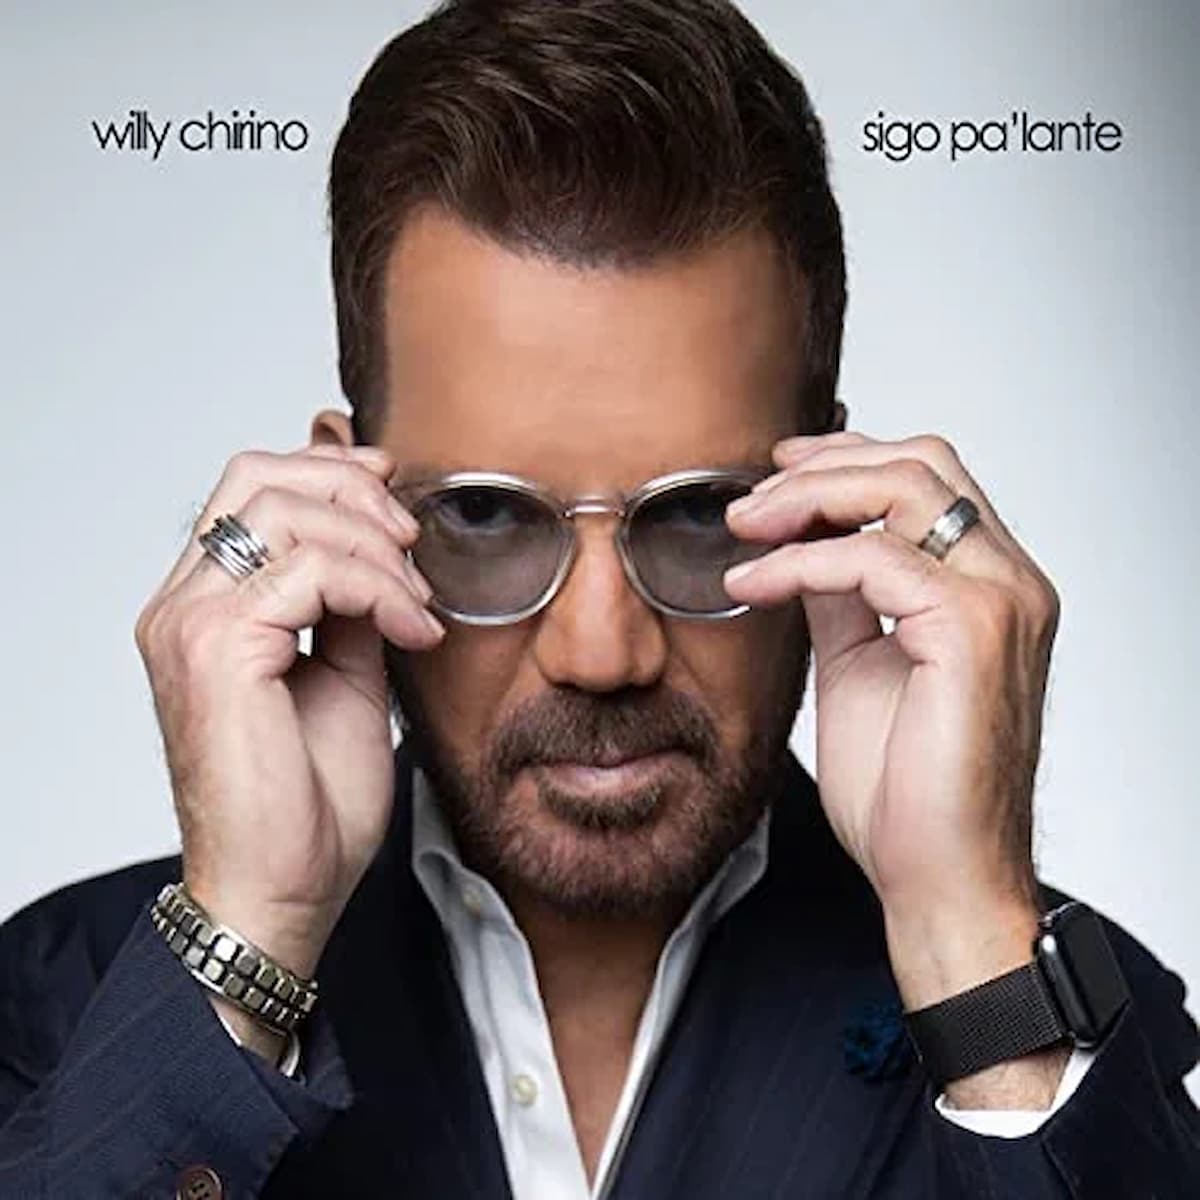 Willy Chirino - Interessantes Salsa-Album “Sigo Pa'lante” veröffentlicht